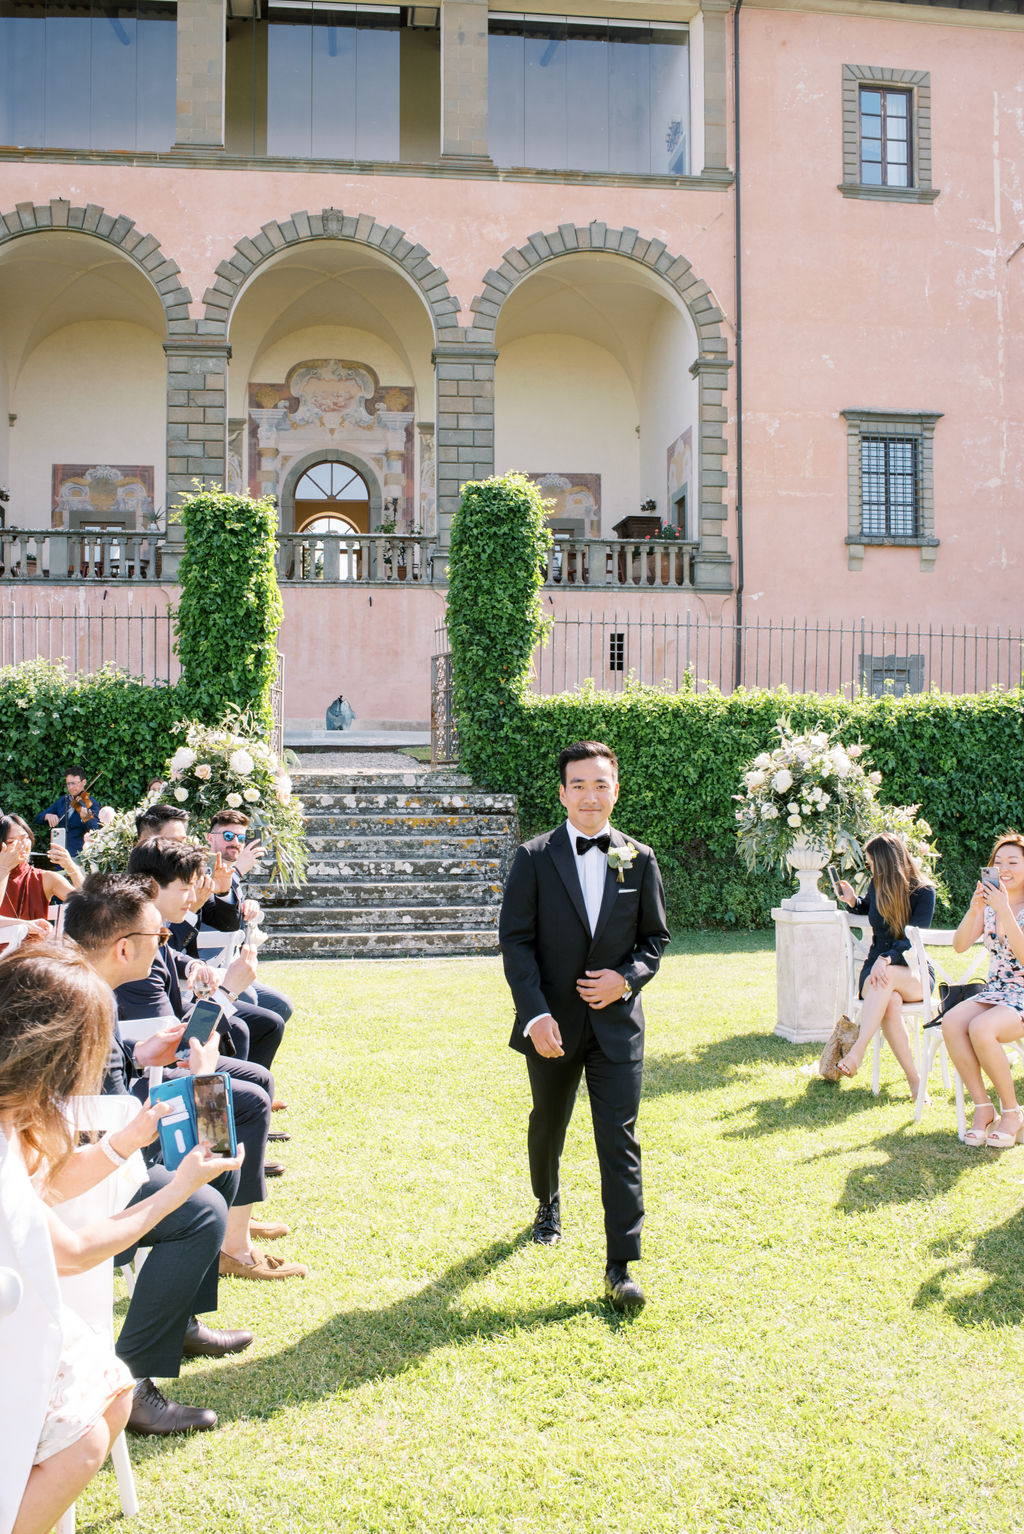 Villa Mangiacane Wedding, Tuscany Wedding, Tuscany Wedding Venue, Anna Gianfrate Photography